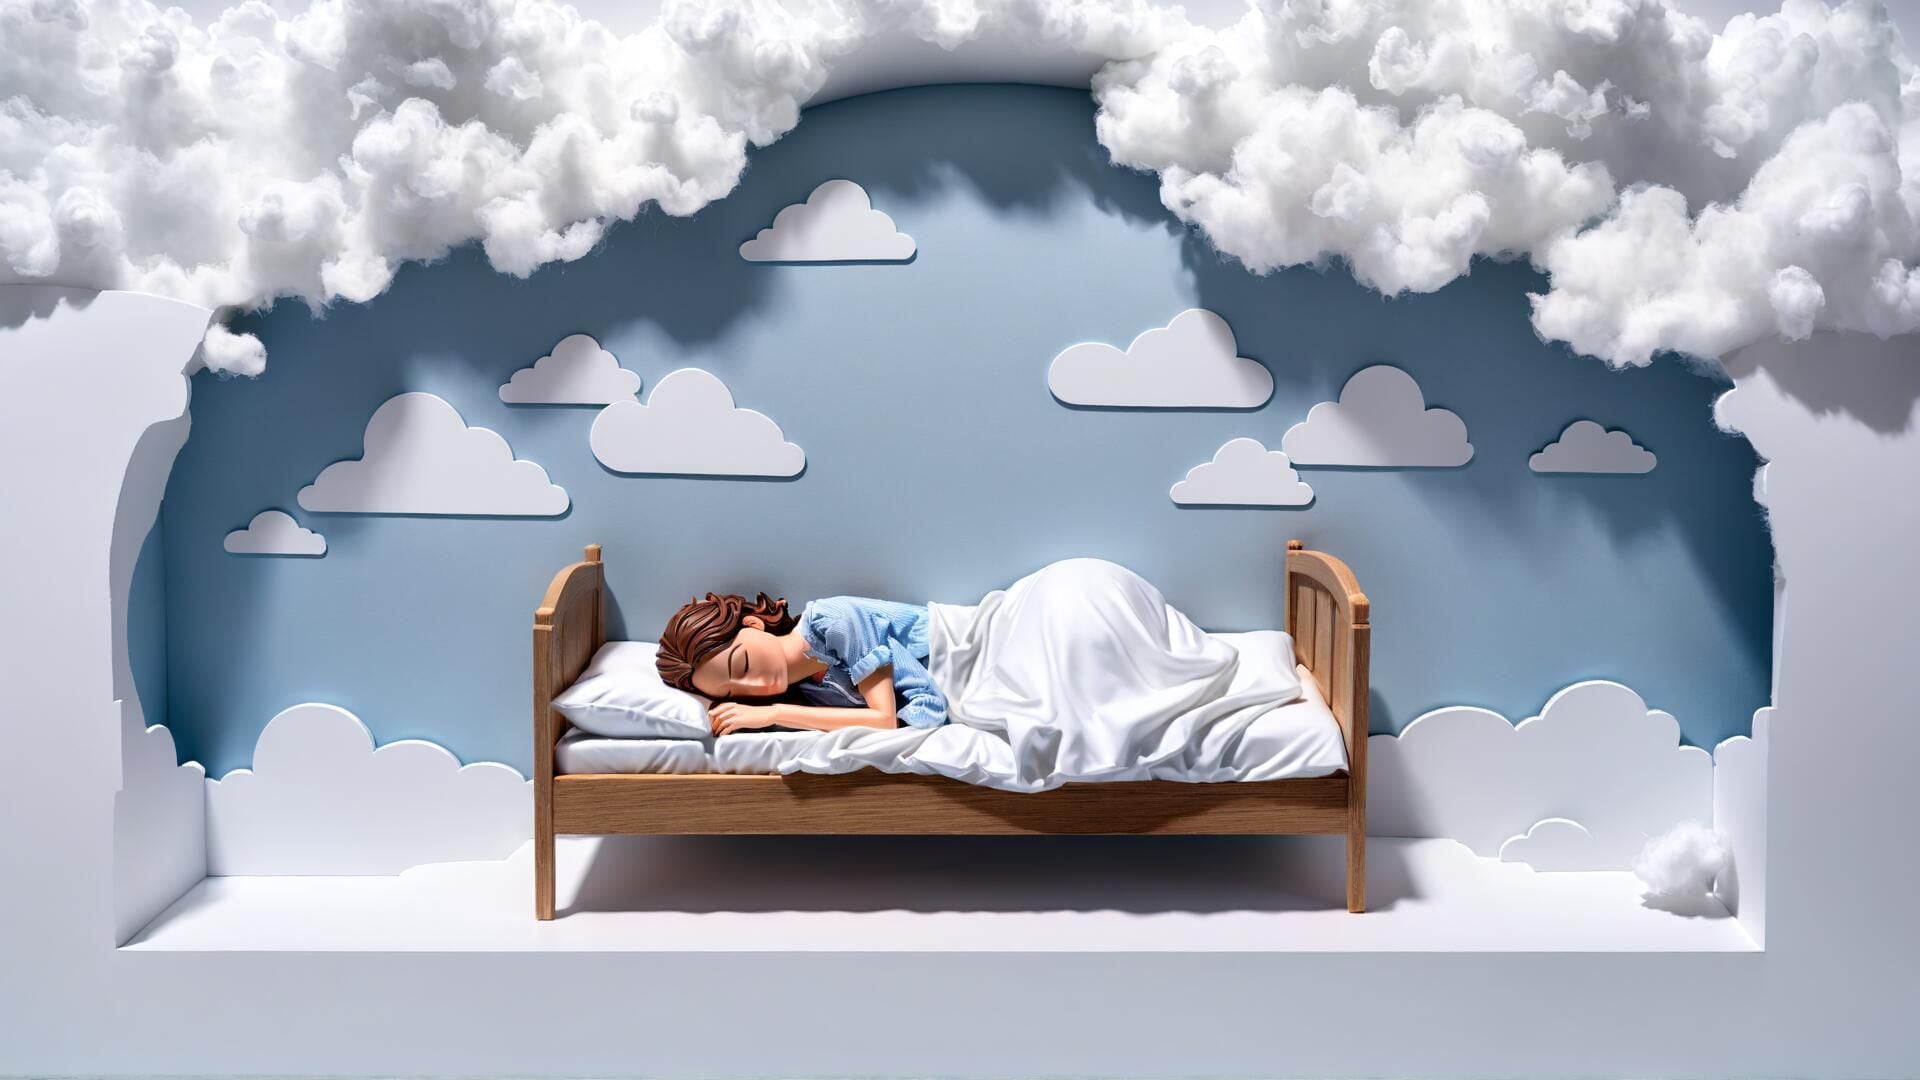 Captura relajante: mujer durmiendo rodeada de nubes, representación visual de paz y sueños. Instantes de descanso que fomentan el bienestar y la salud. (Imagen Ilustrativa Infobae)